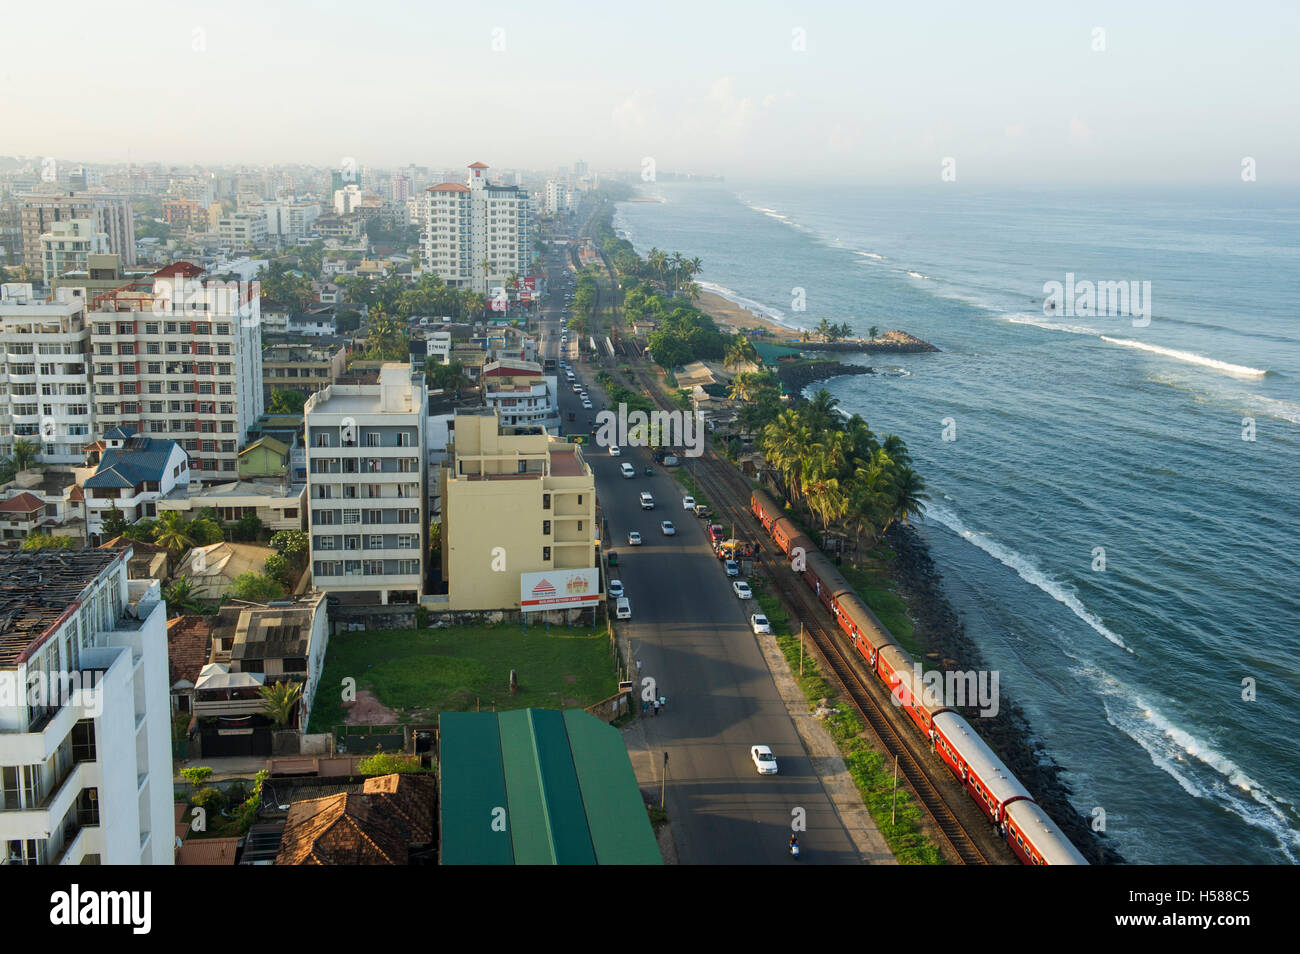 Vue sur le front de mer et un train qui passe, Colombo, Sri Lanka Banque D'Images